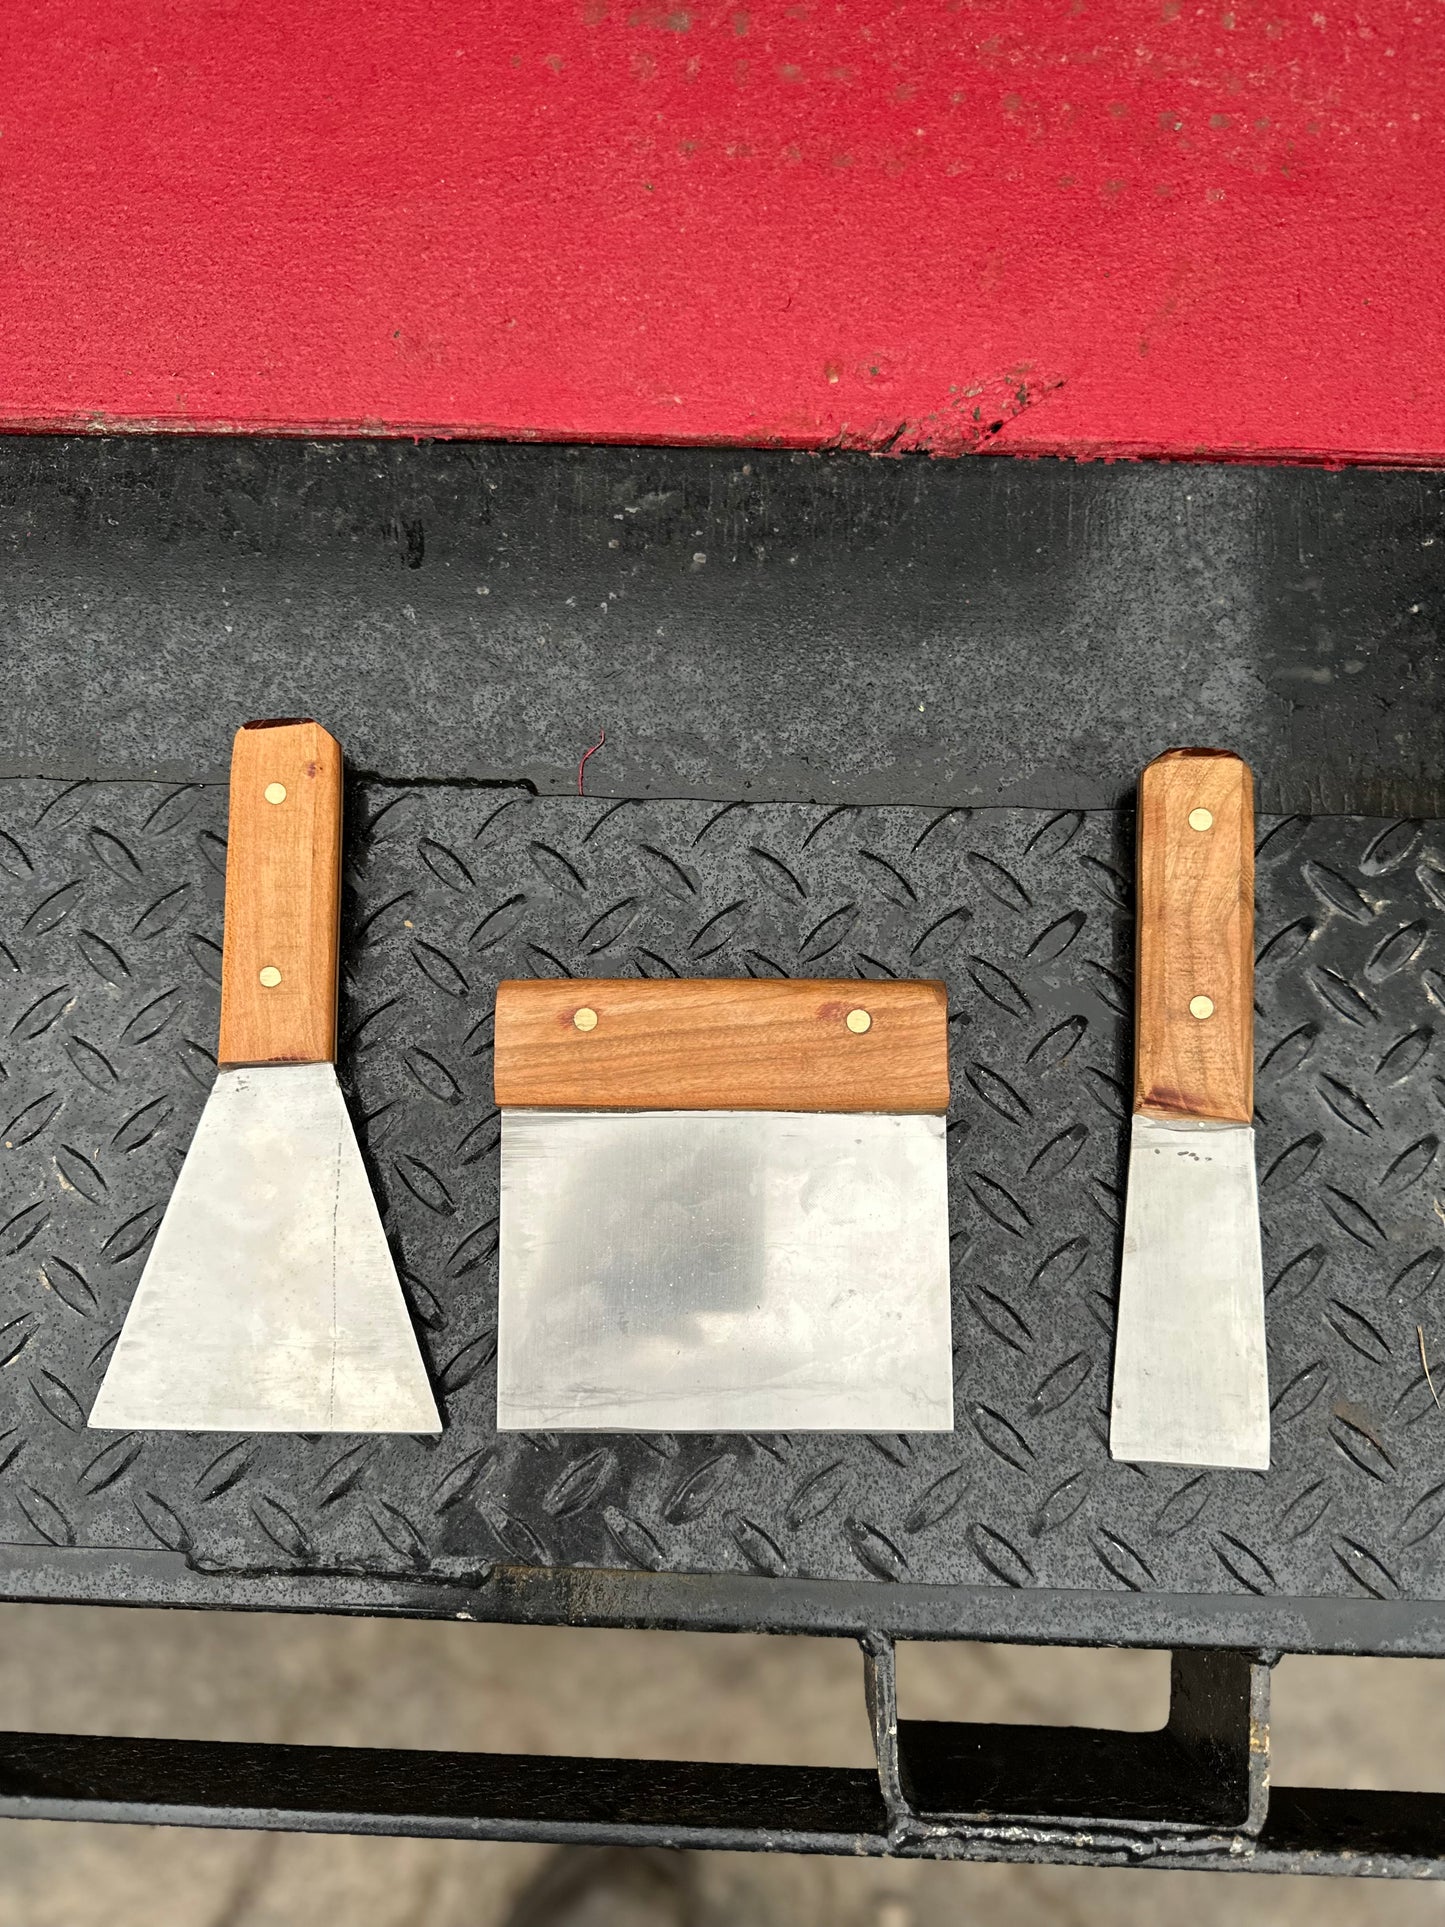 Stainless Steel Grate Scraper Kit